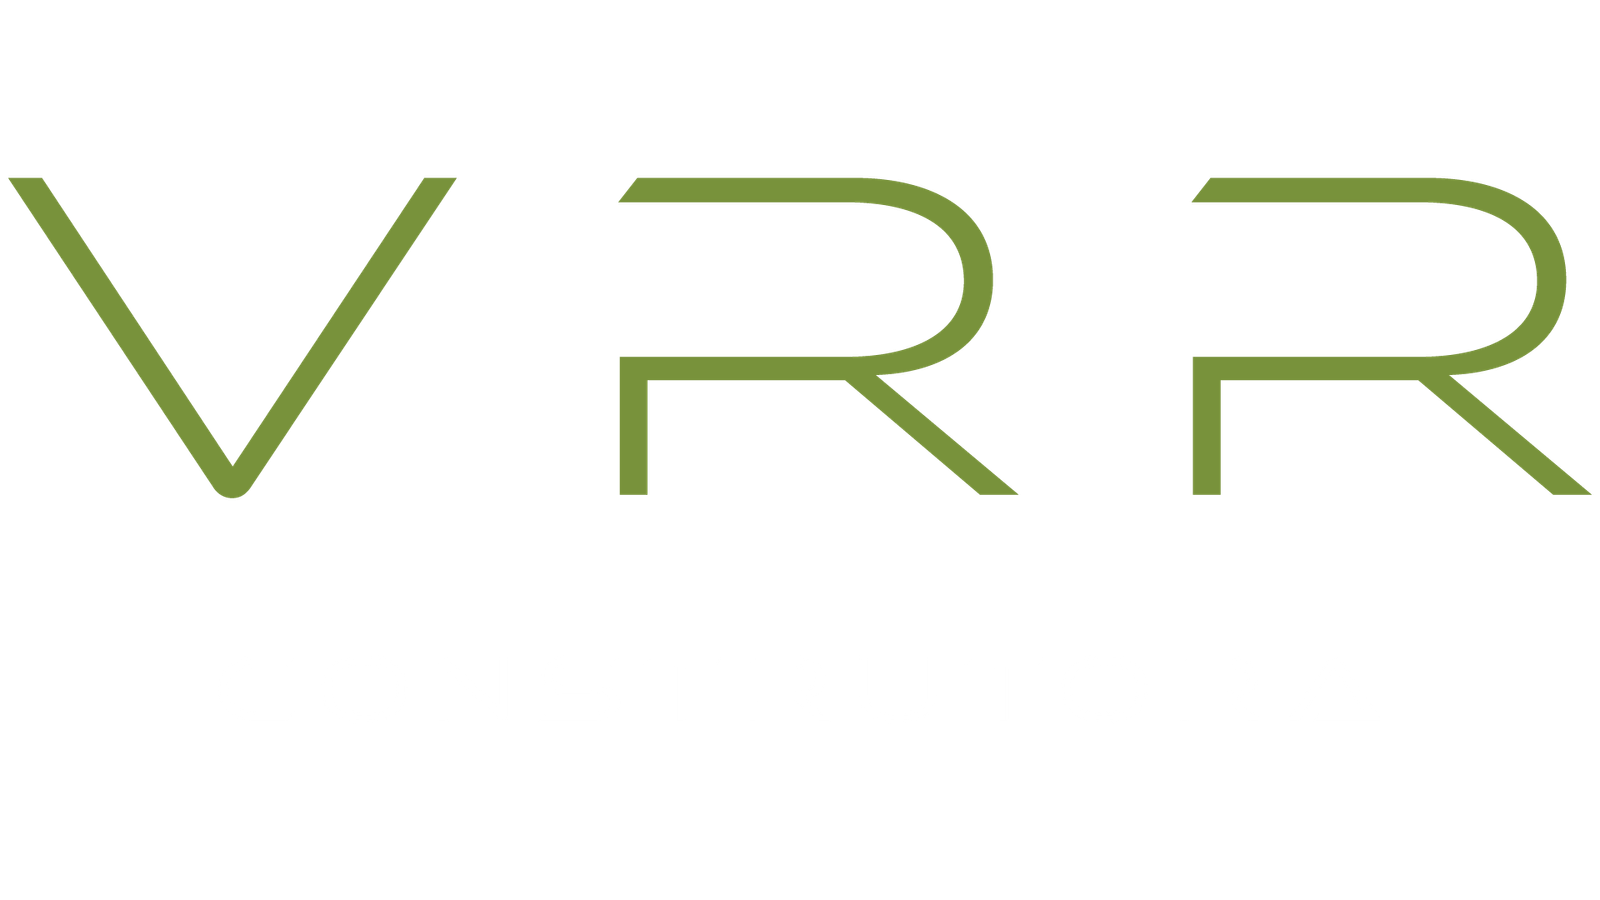 vrr-logo-01